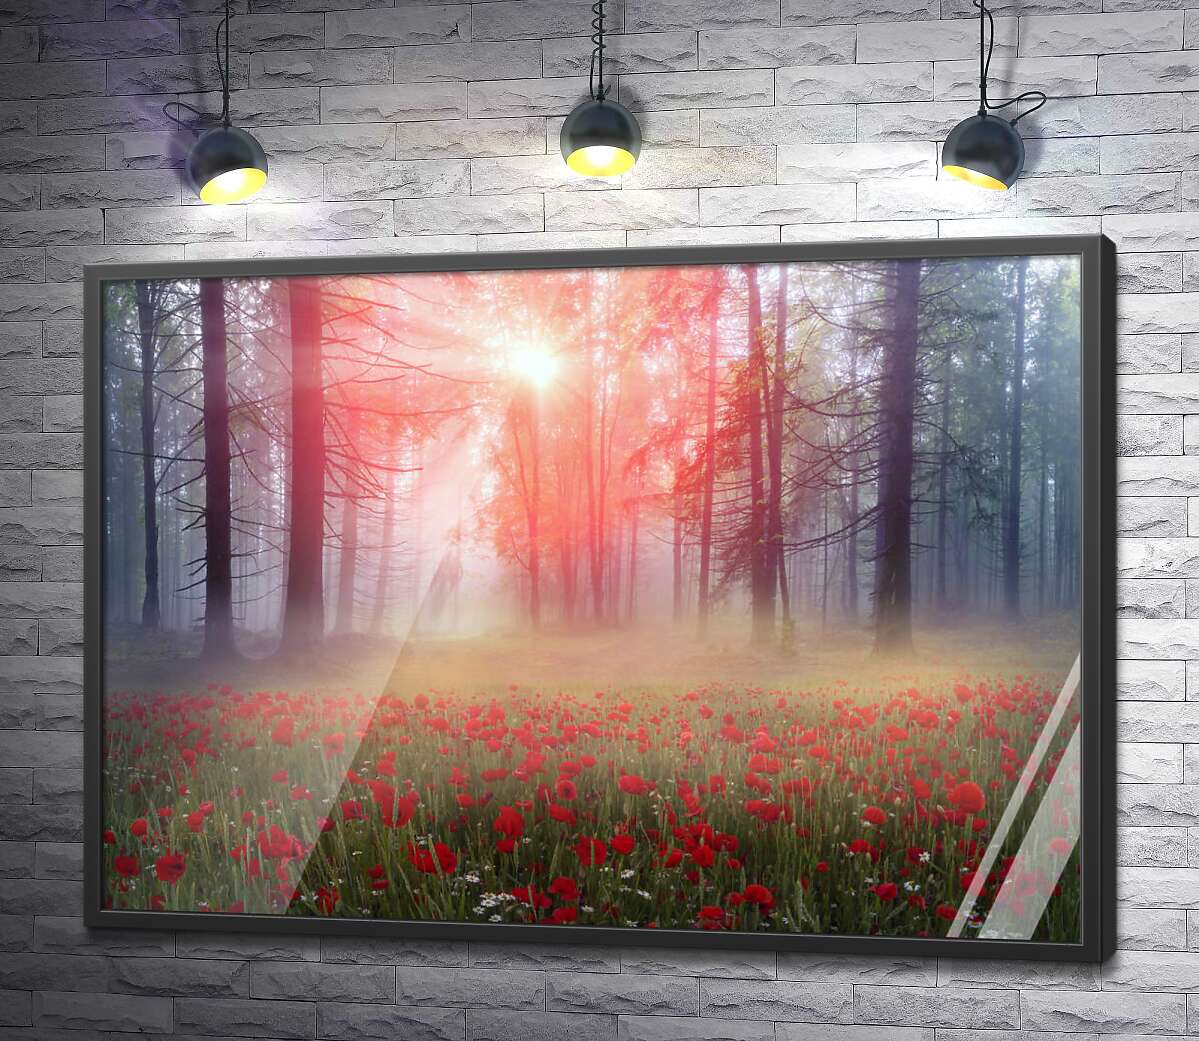 постер Свет пробивается на лужайку туманного леса, покрытую красными маками